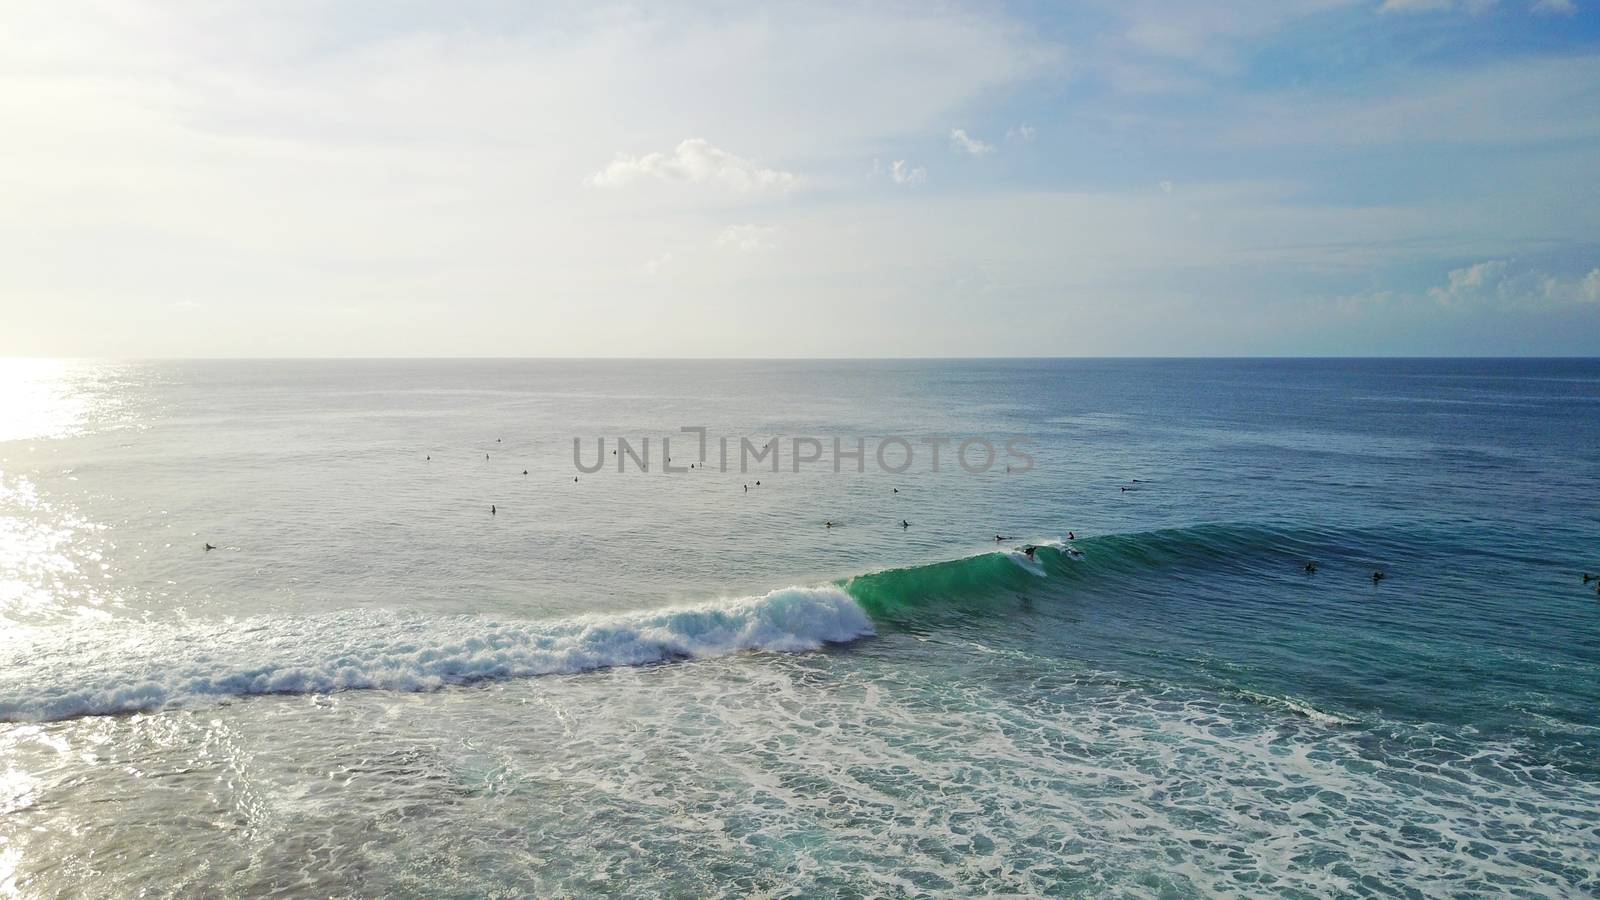 Surfers catch waves on the beach of Bali, Uluwatu by Passcal